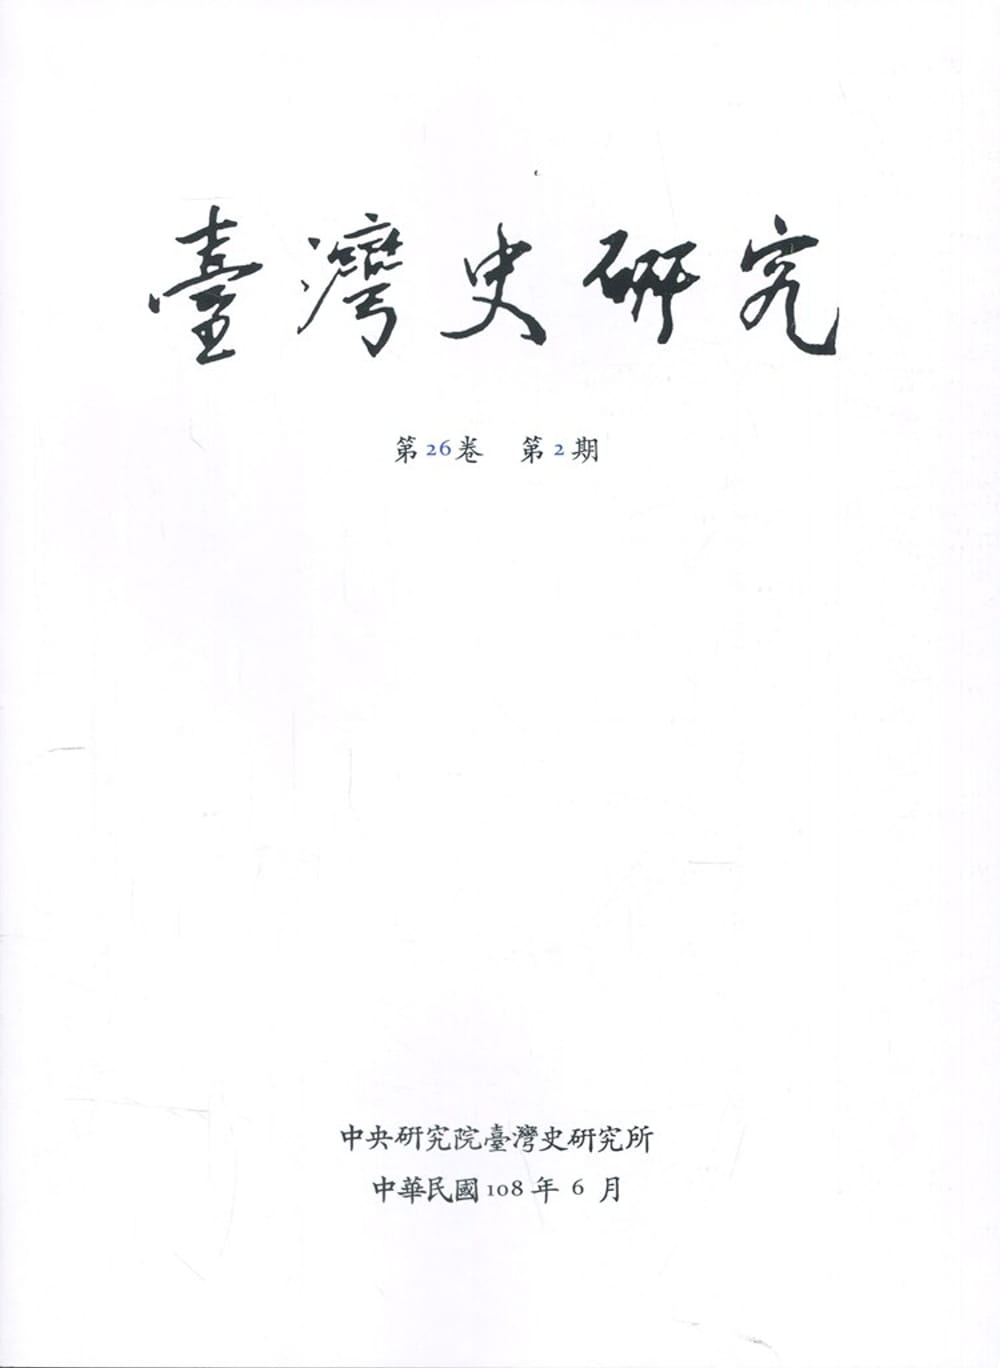 臺灣史研究第26卷2期(108.06)